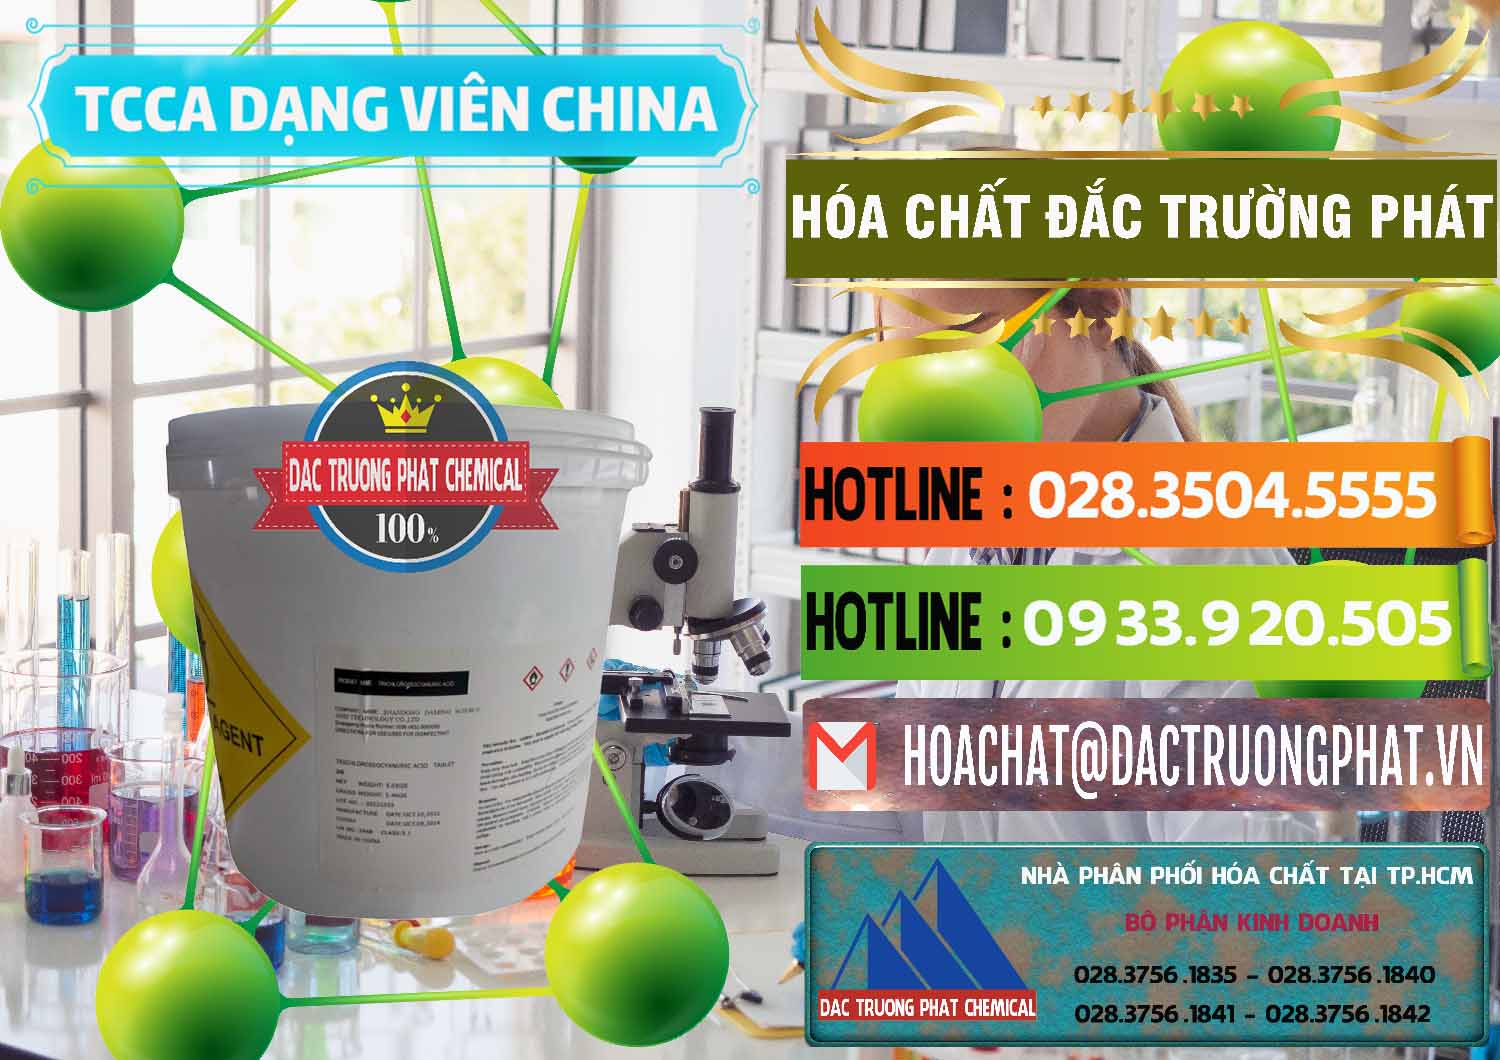 Cty kinh doanh & bán TCCA - Acid Trichloroisocyanuric Dạng Viên Thùng 5kg Trung Quốc China - 0379 - Nơi cung cấp ( nhập khẩu ) hóa chất tại TP.HCM - cungcaphoachat.com.vn